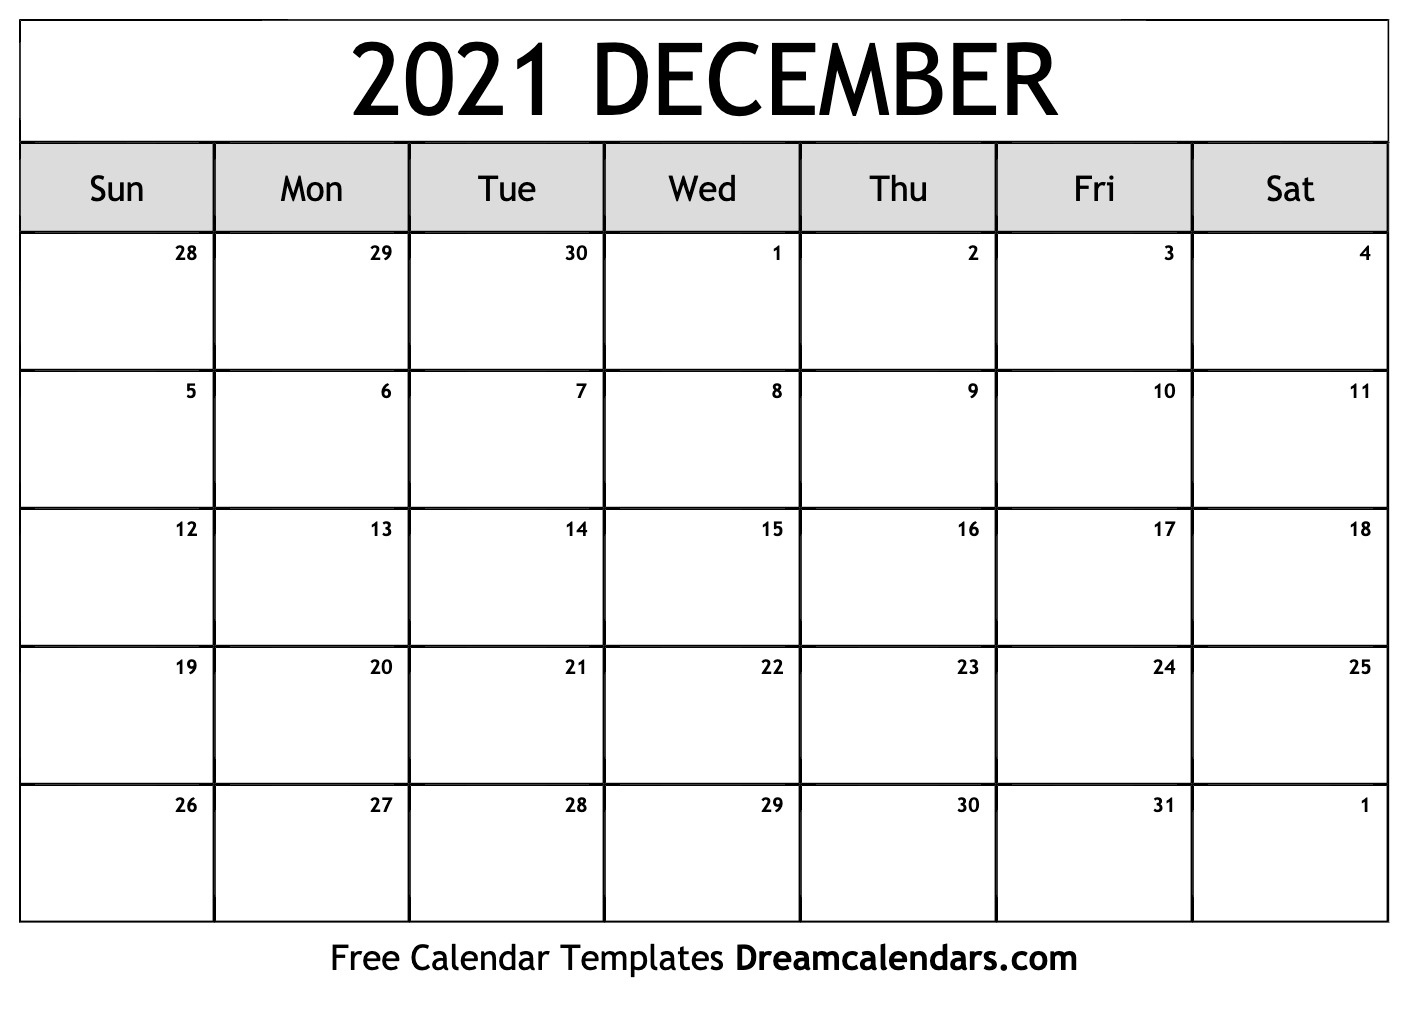 December 2021 Calendar Printable | Example Calendar Printable December 2020 To December 2021 Calendar